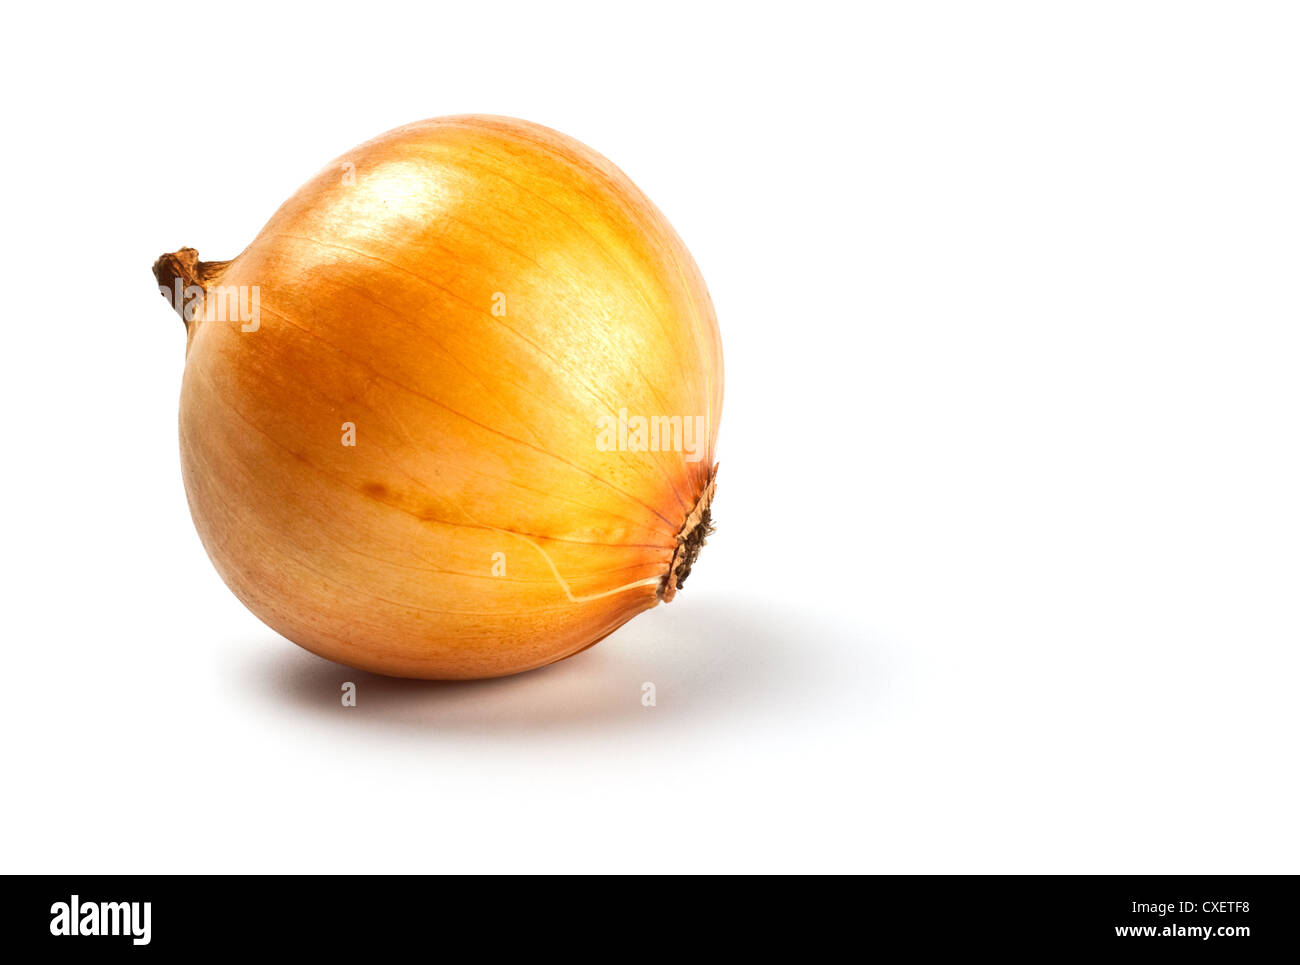 onion in peel Stock Photo